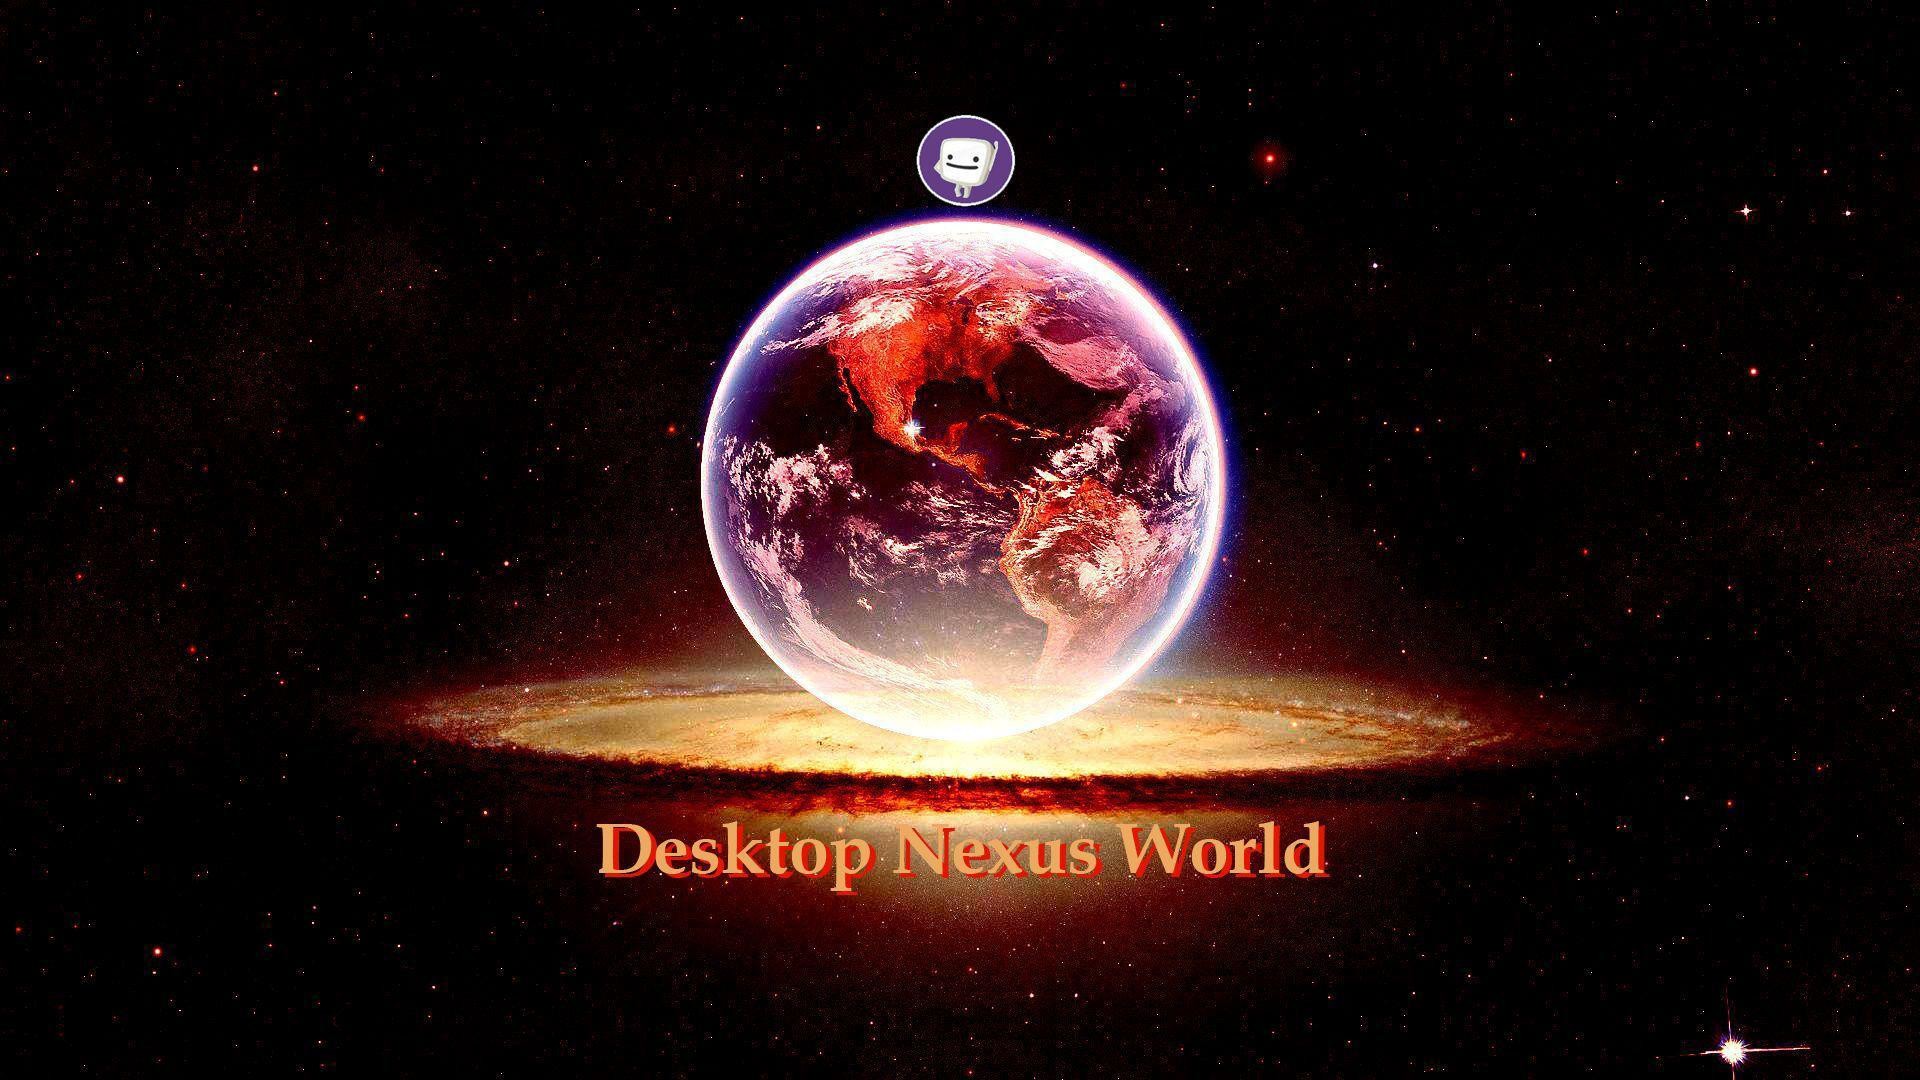 Nexus Desktop Wallpaper Image